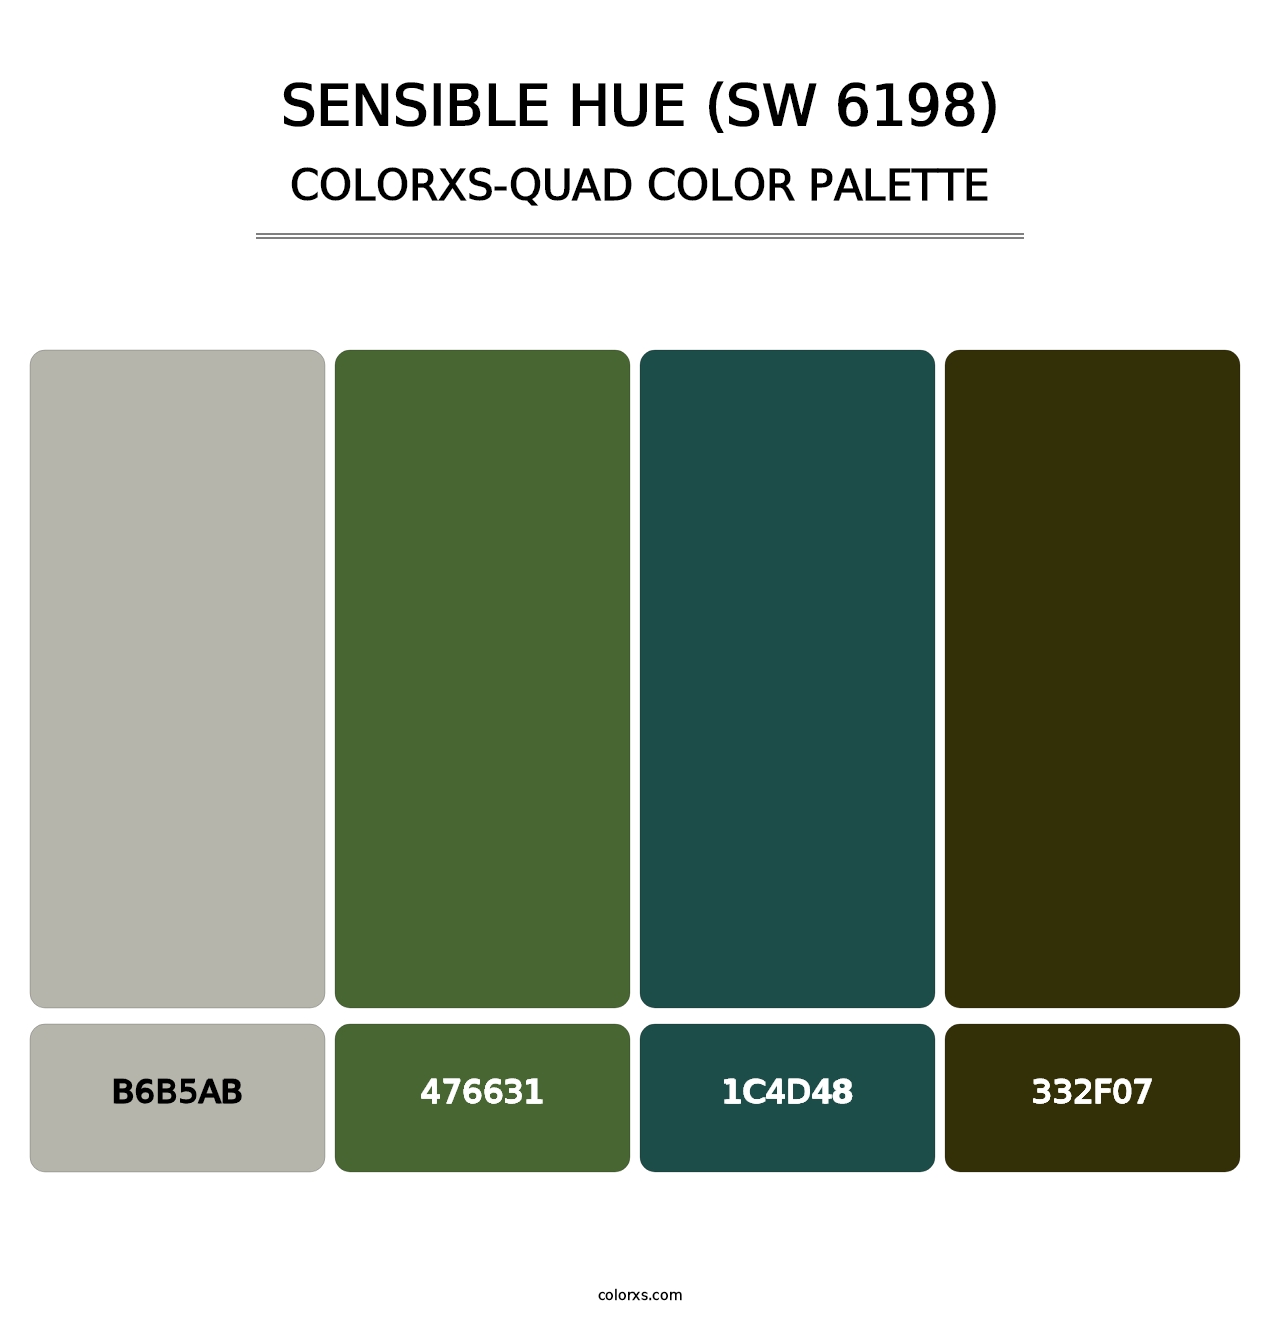 Sensible Hue (SW 6198) - Colorxs Quad Palette